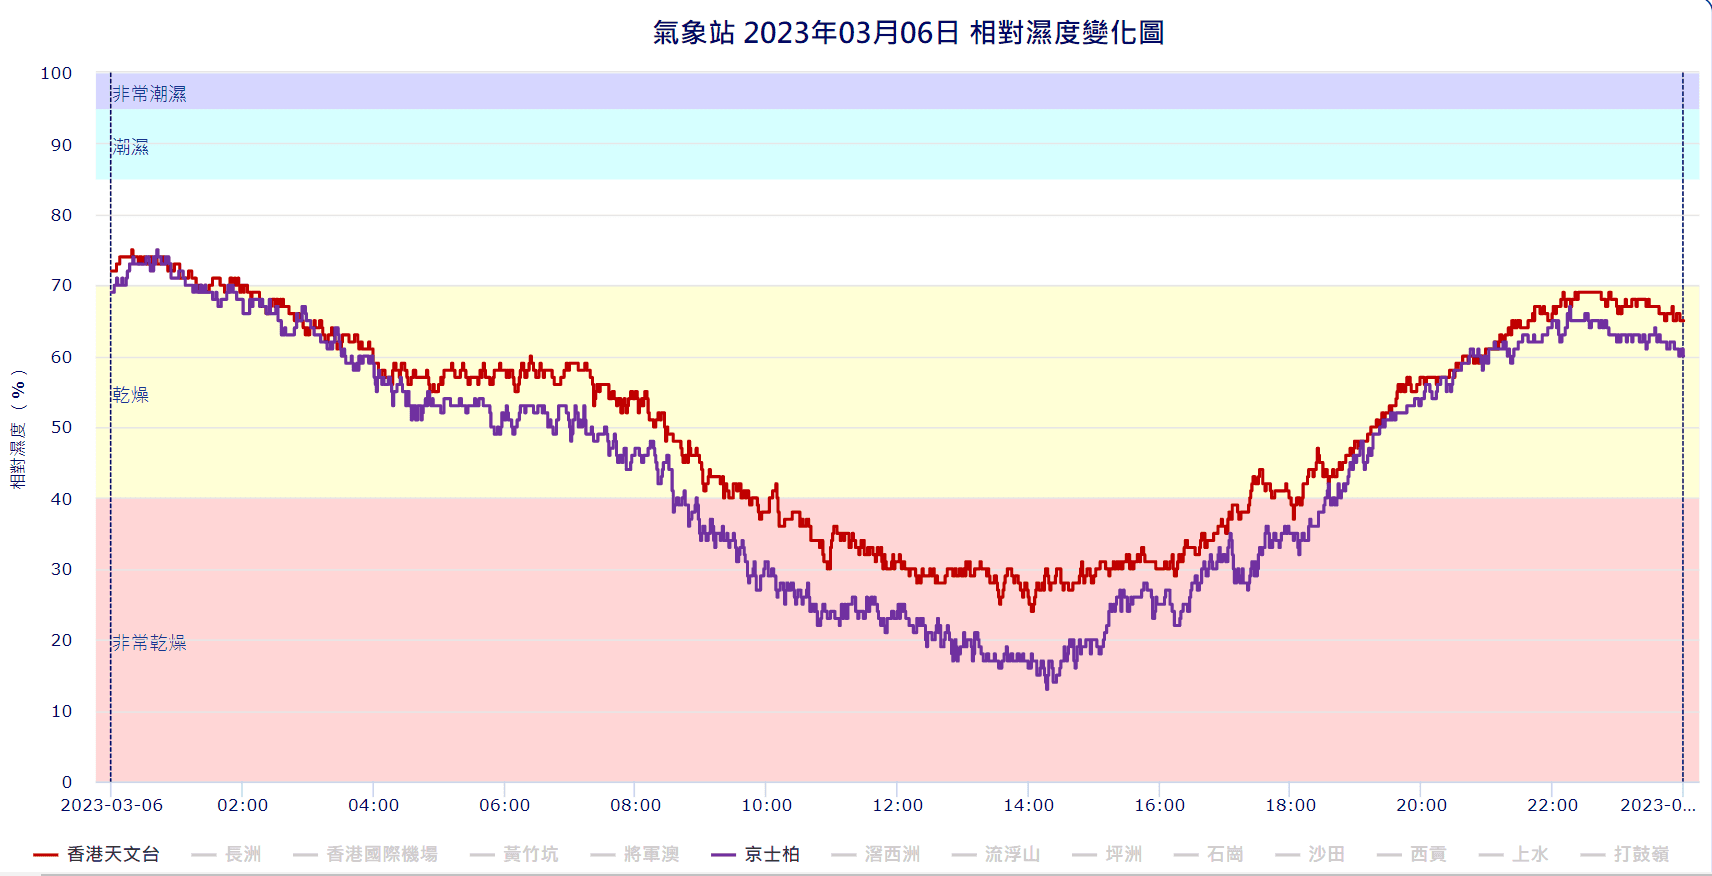 九龍京士柏的相對濕度在下午2時許低見17%；尖沙嘴天文台總部在下午約2時亦跌至24%。